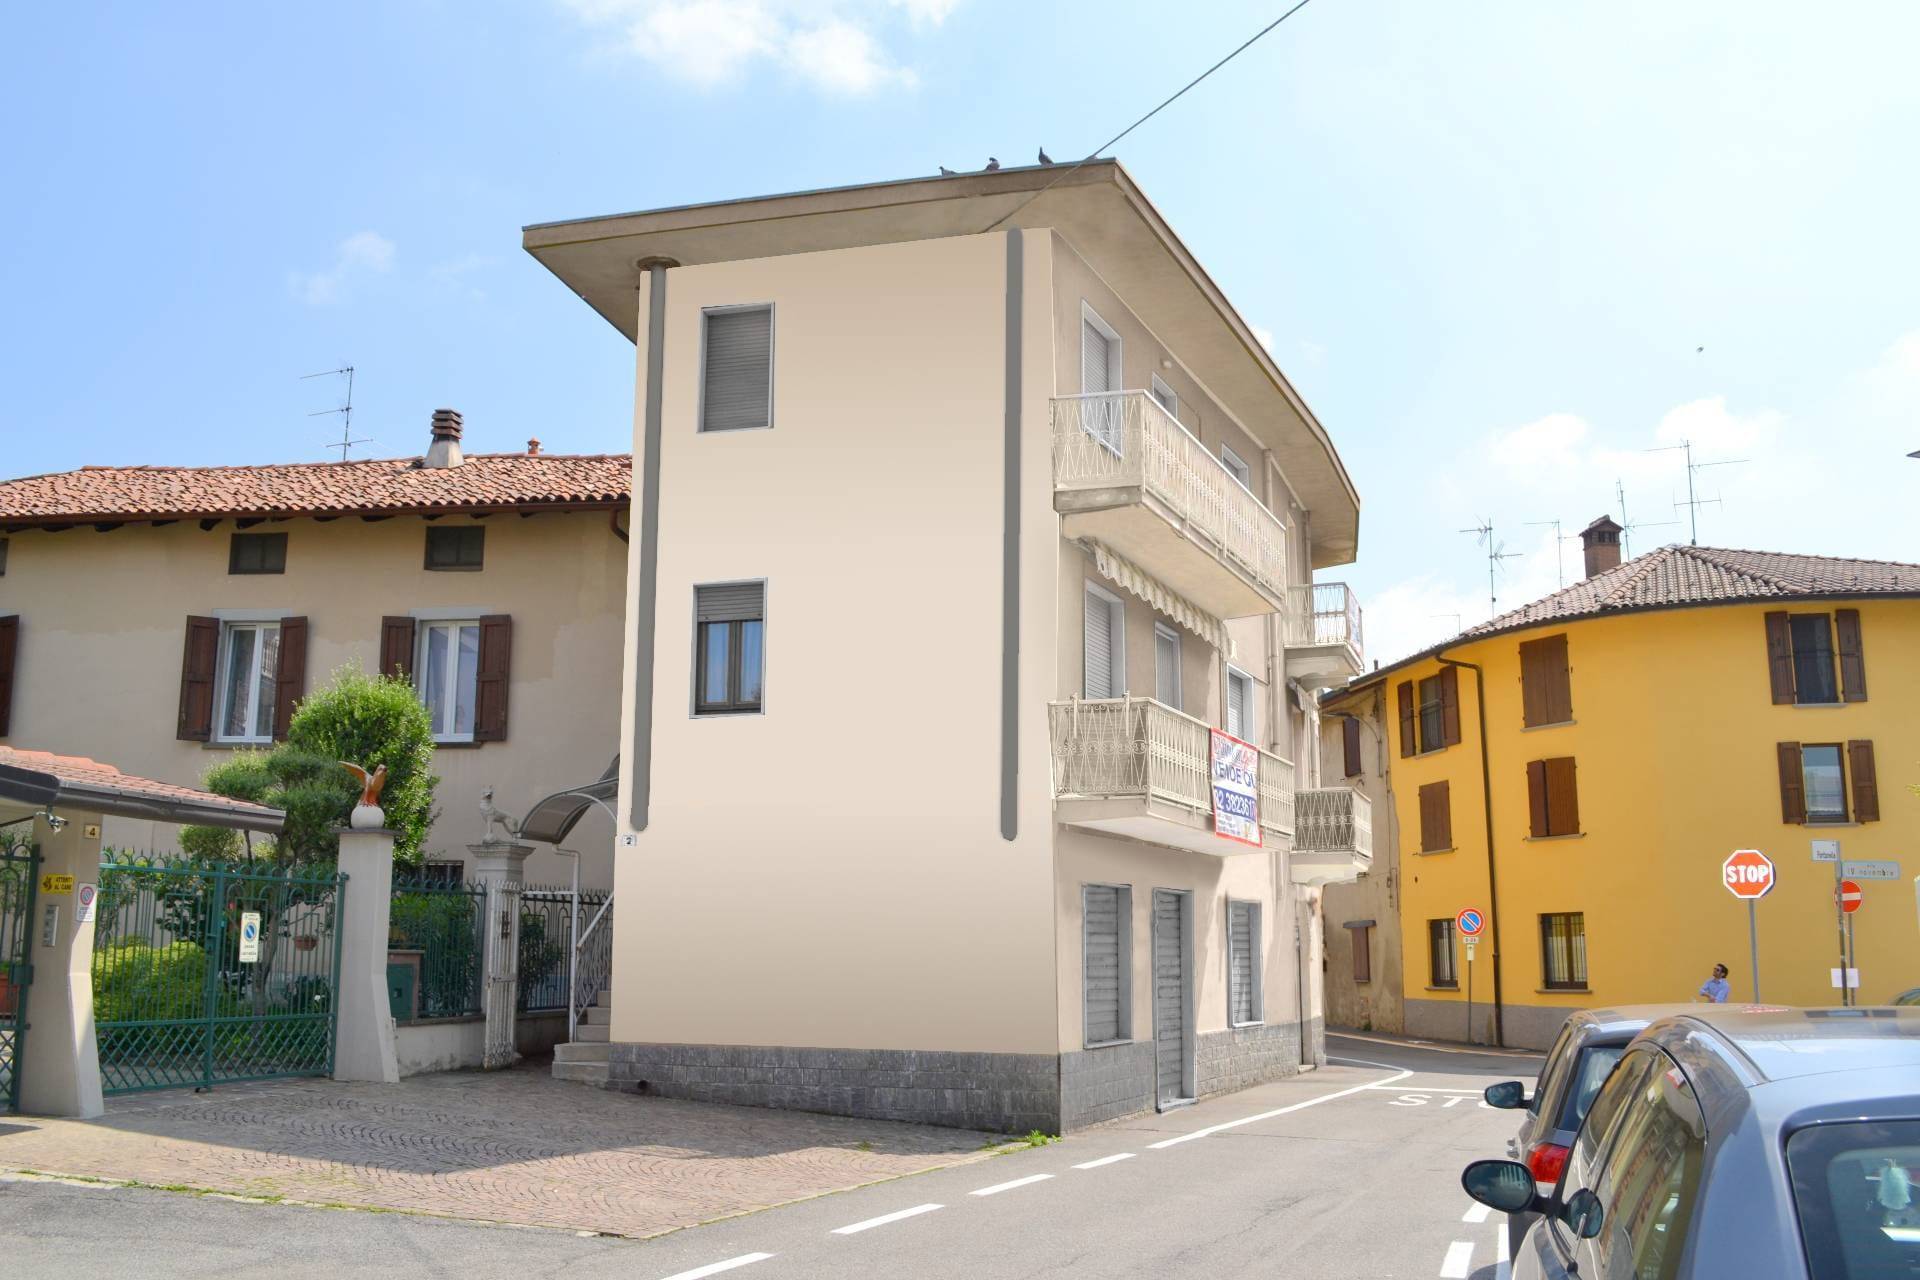 Appartamento in vendita a Suisio, 2 locali, prezzo € 75.000 | PortaleAgenzieImmobiliari.it